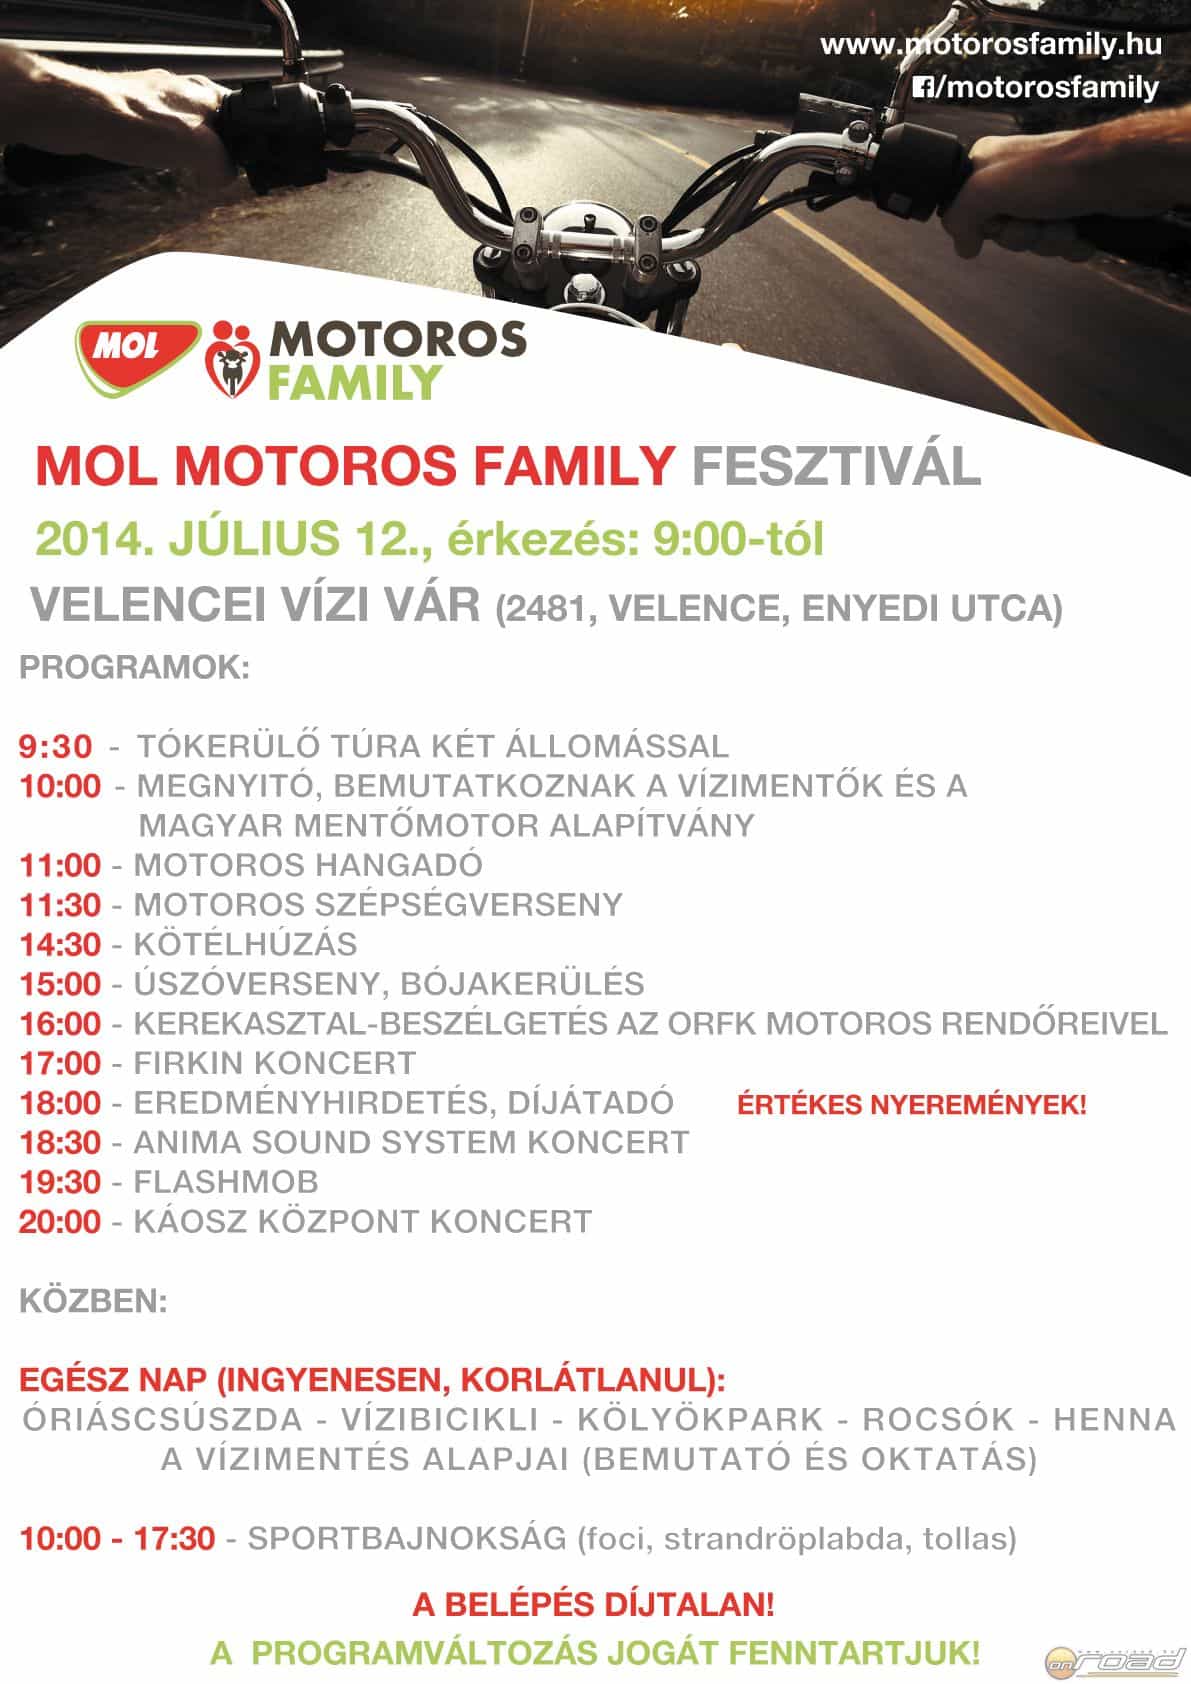 MOL Motoros Family Fesztivál Onroad